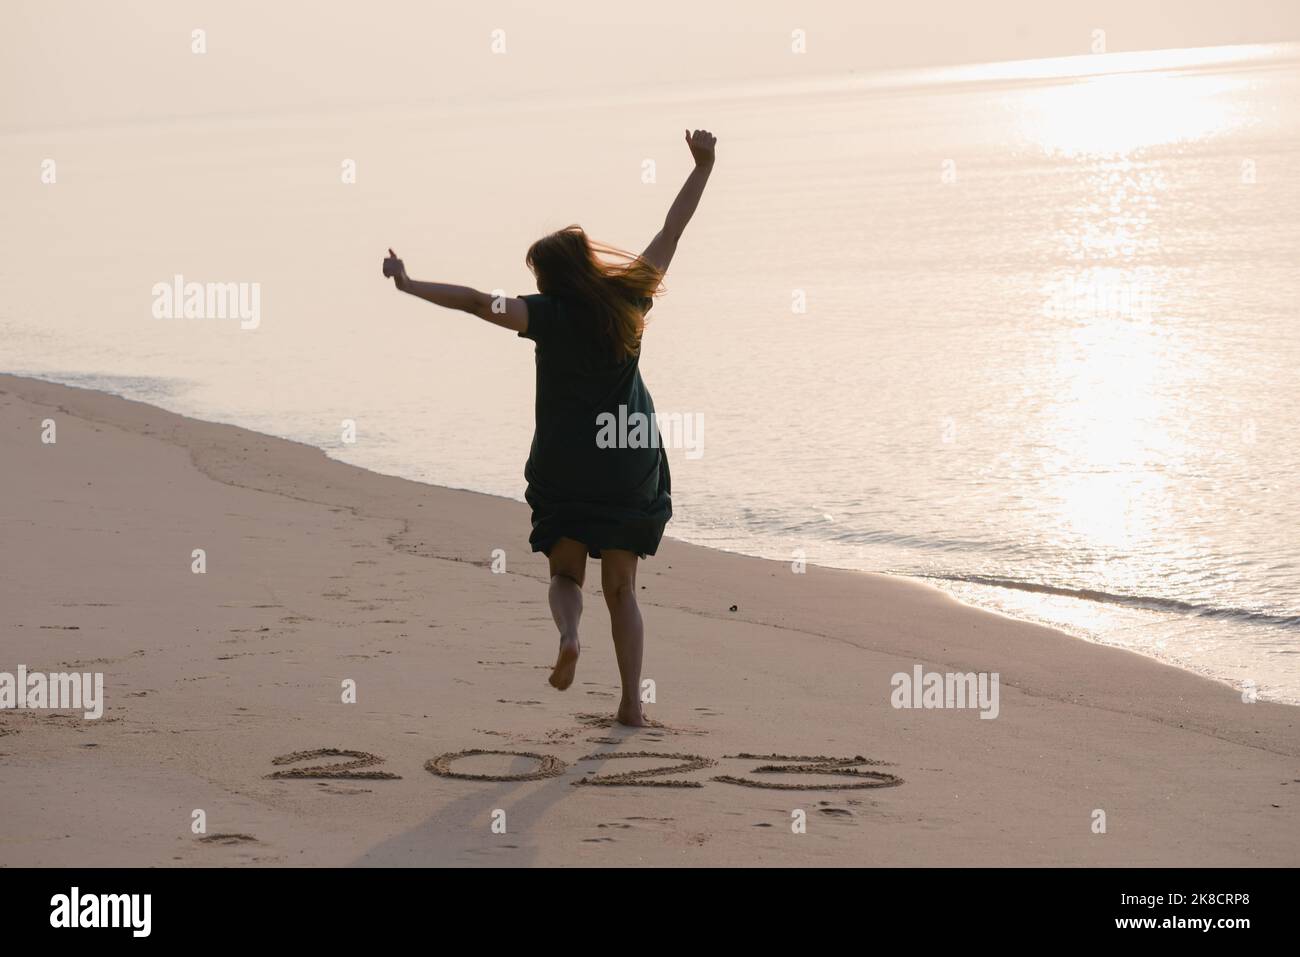 2023 Felice anno nuovo, giovane donna sana che corre e salta sulla spiaggia all'alba, assistenza sanitaria, assicurazione sanitaria, concetto di vita sana, copia spazio Foto Stock